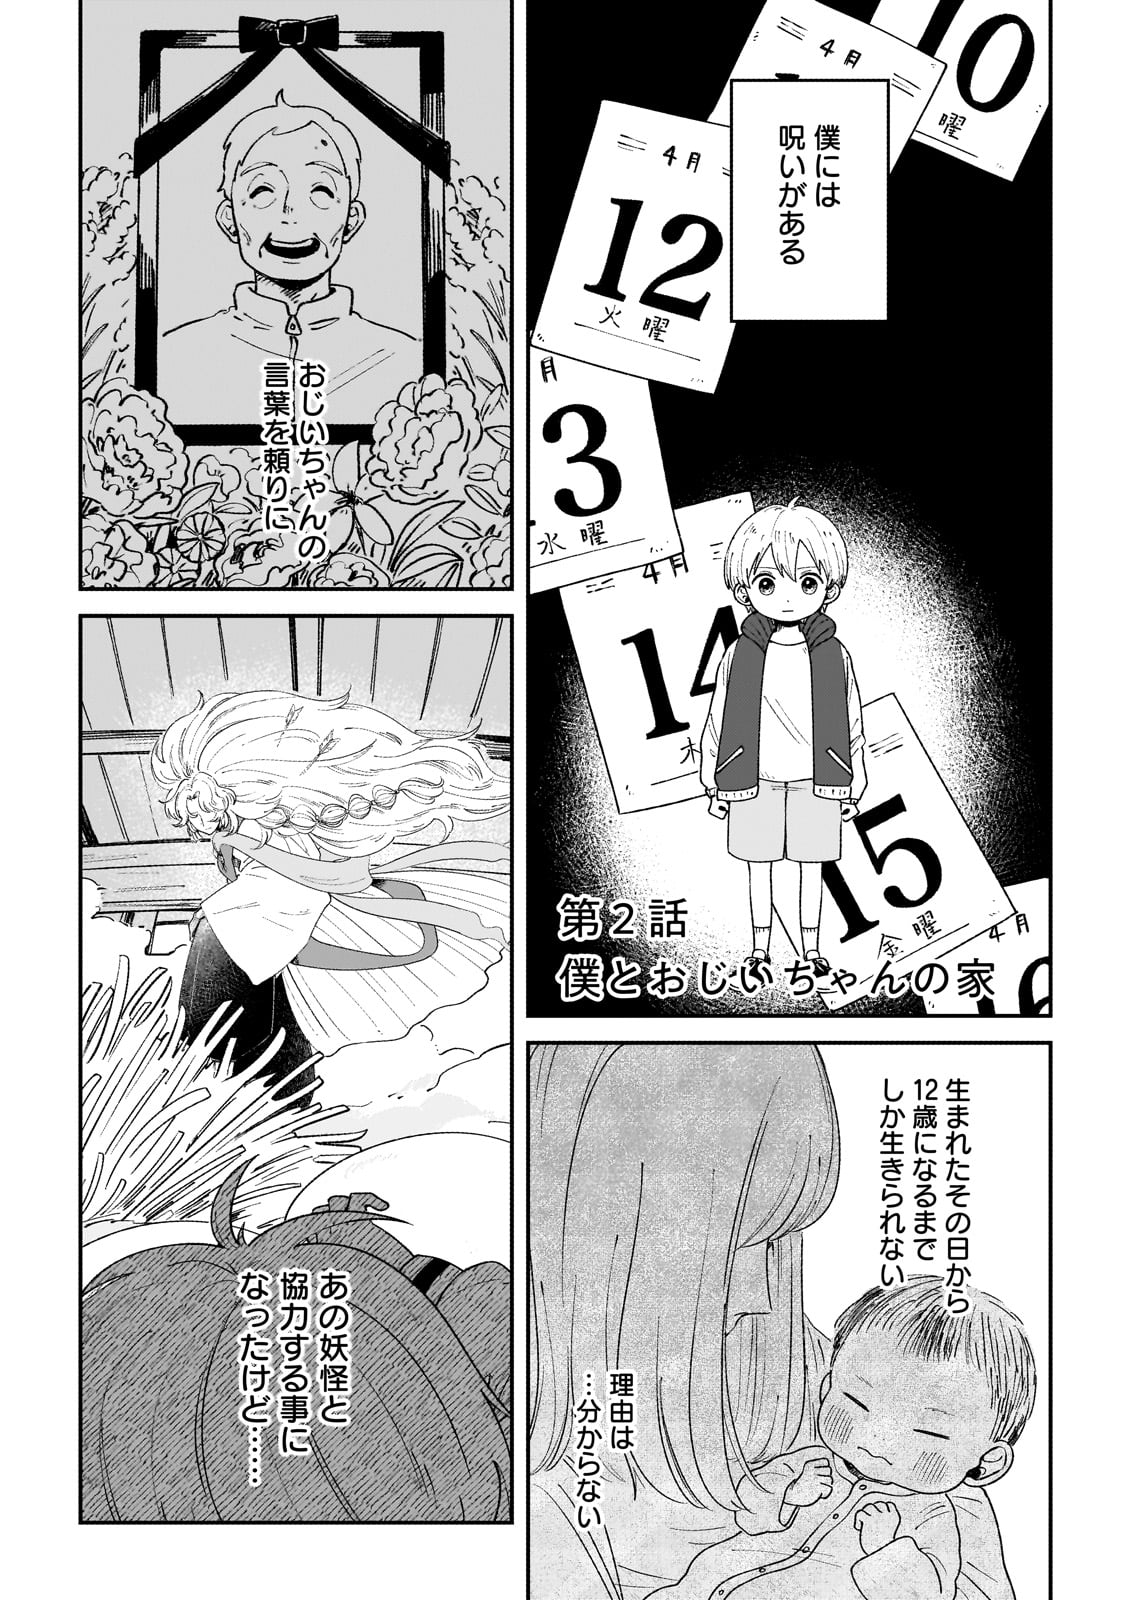 Boku to Ayakashi no 365 Nichi - Chapter 2 - Page 1